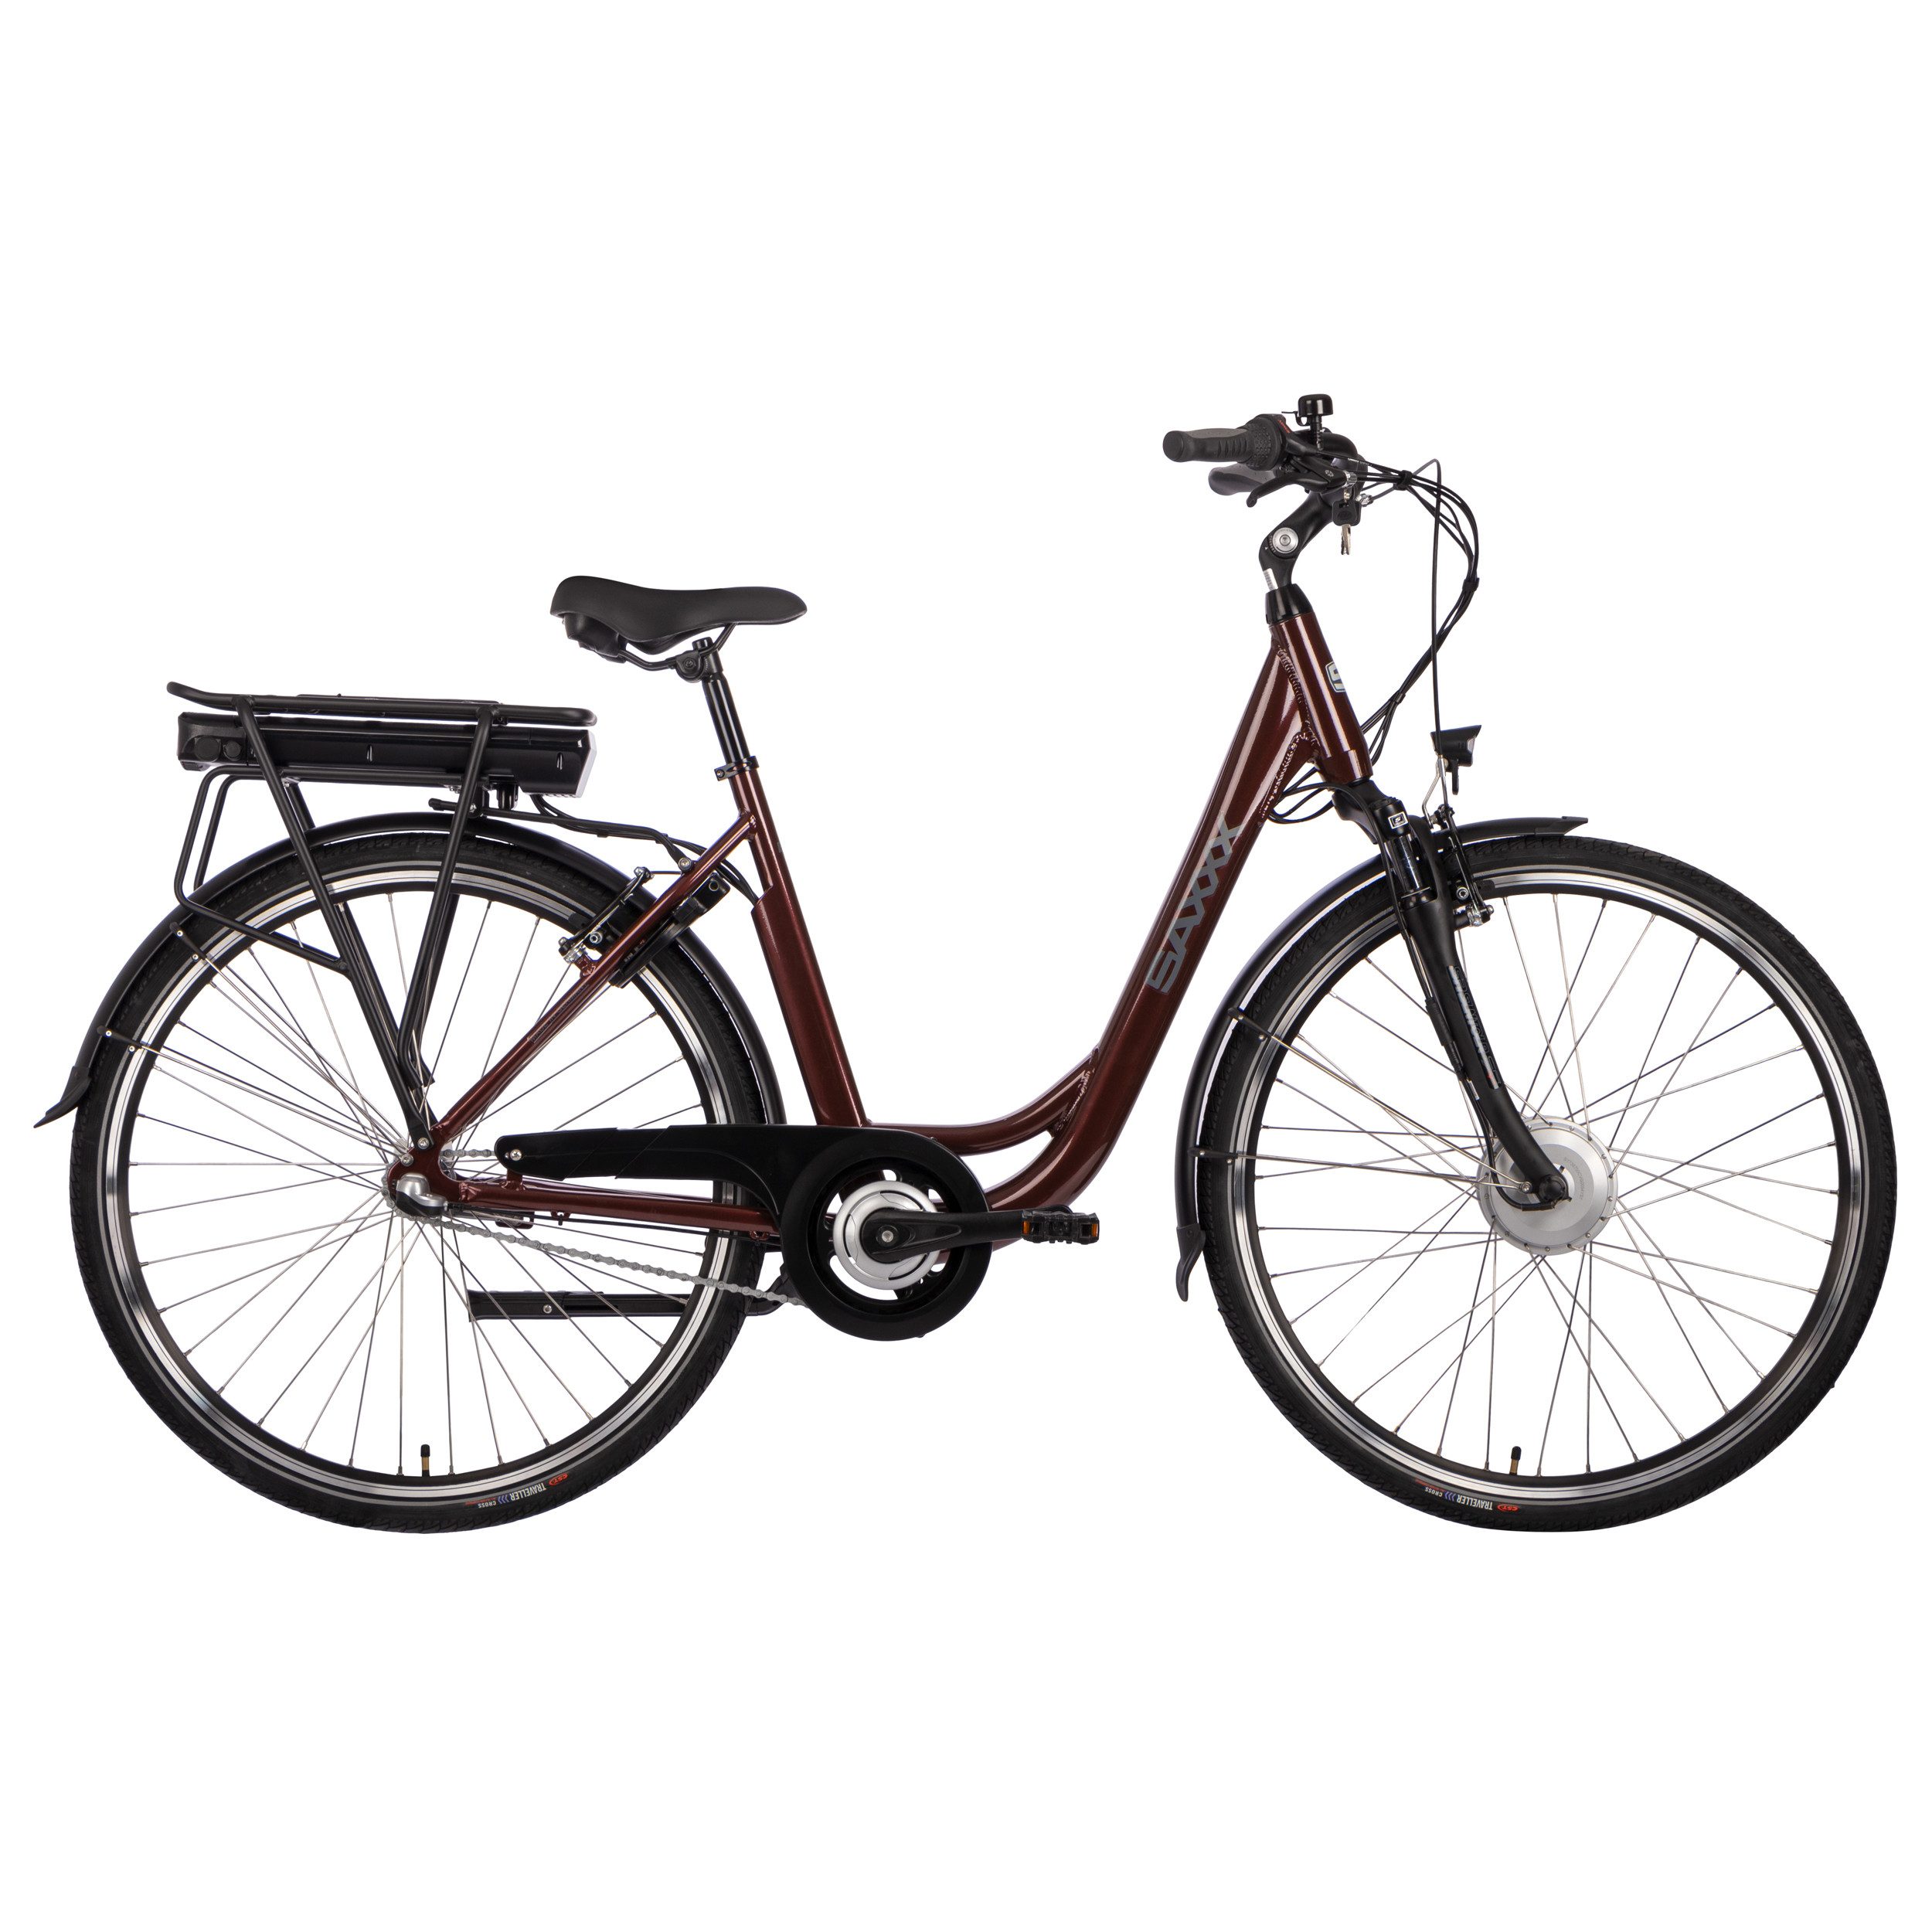 SAXXX E-Bike Advanced Plus Damen E-bike Cityrad mit Rücktrittbremse, 3 Gang Shimano Nexus Schaltwerk, Nabenschaltung, Vorderradmotor, 375 Wh Akku, die hochwertige Nabenschaltung